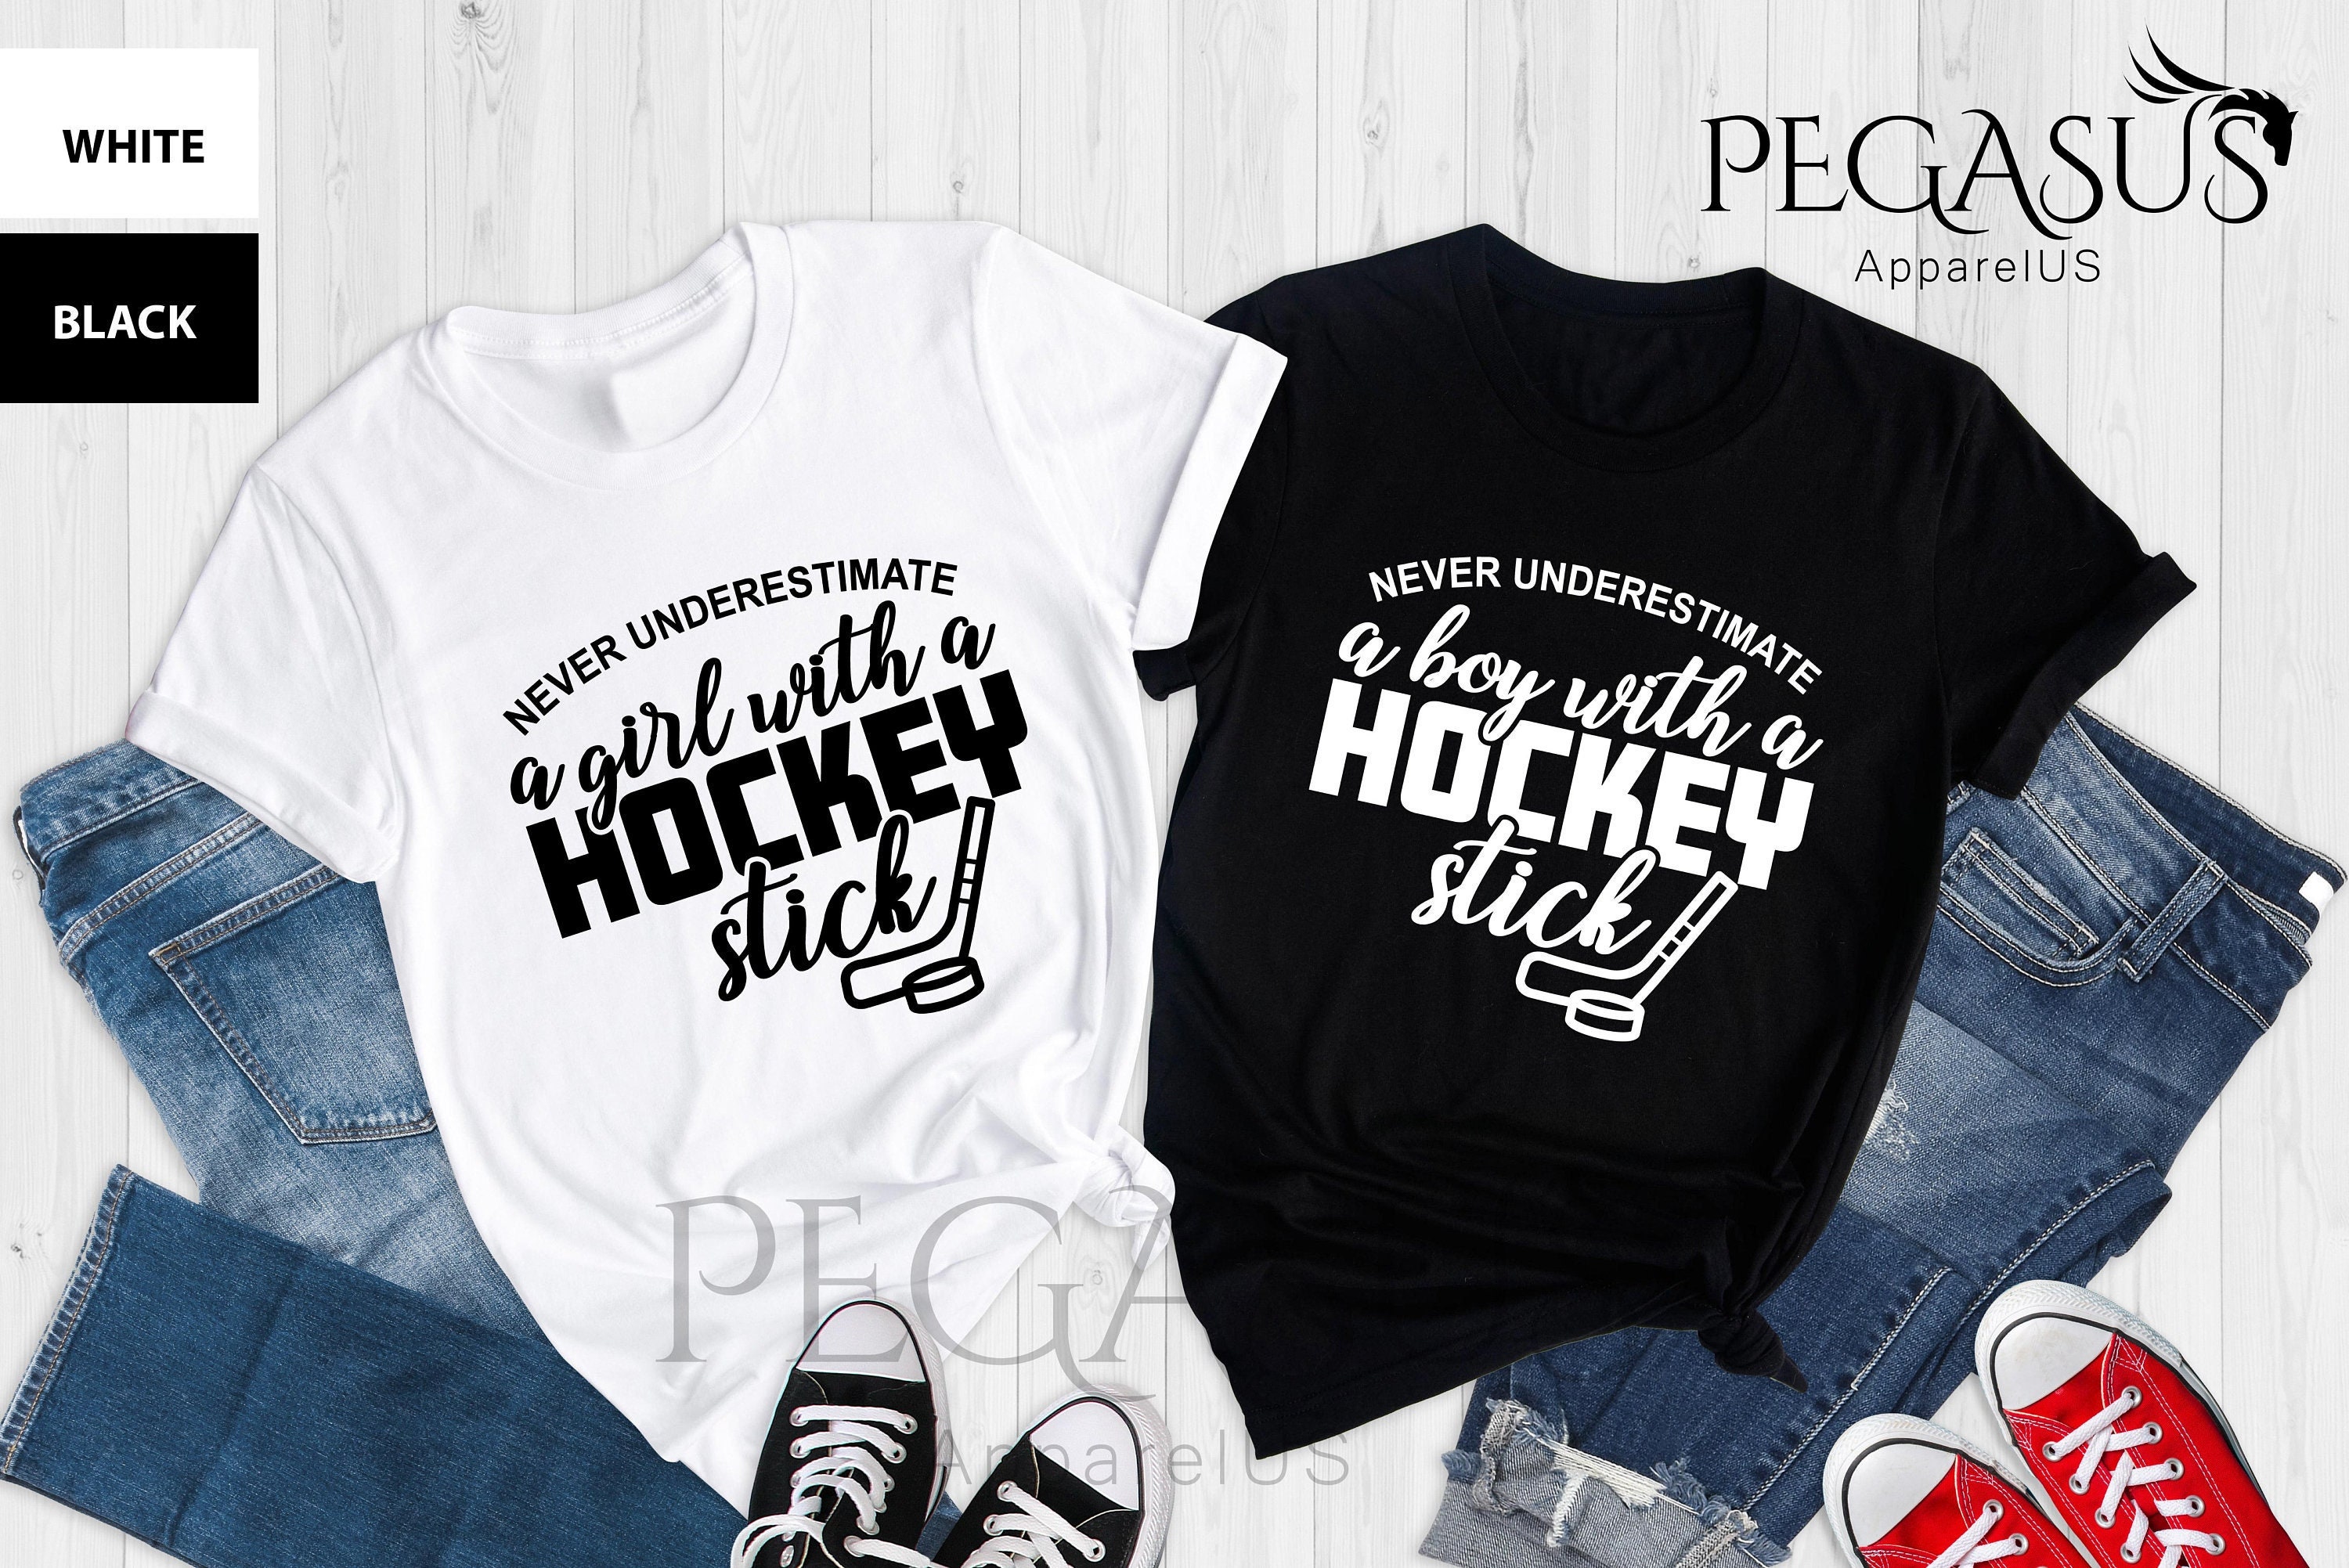 Pylinks.com  Hockey clothes, Team apparel, Sport outfits